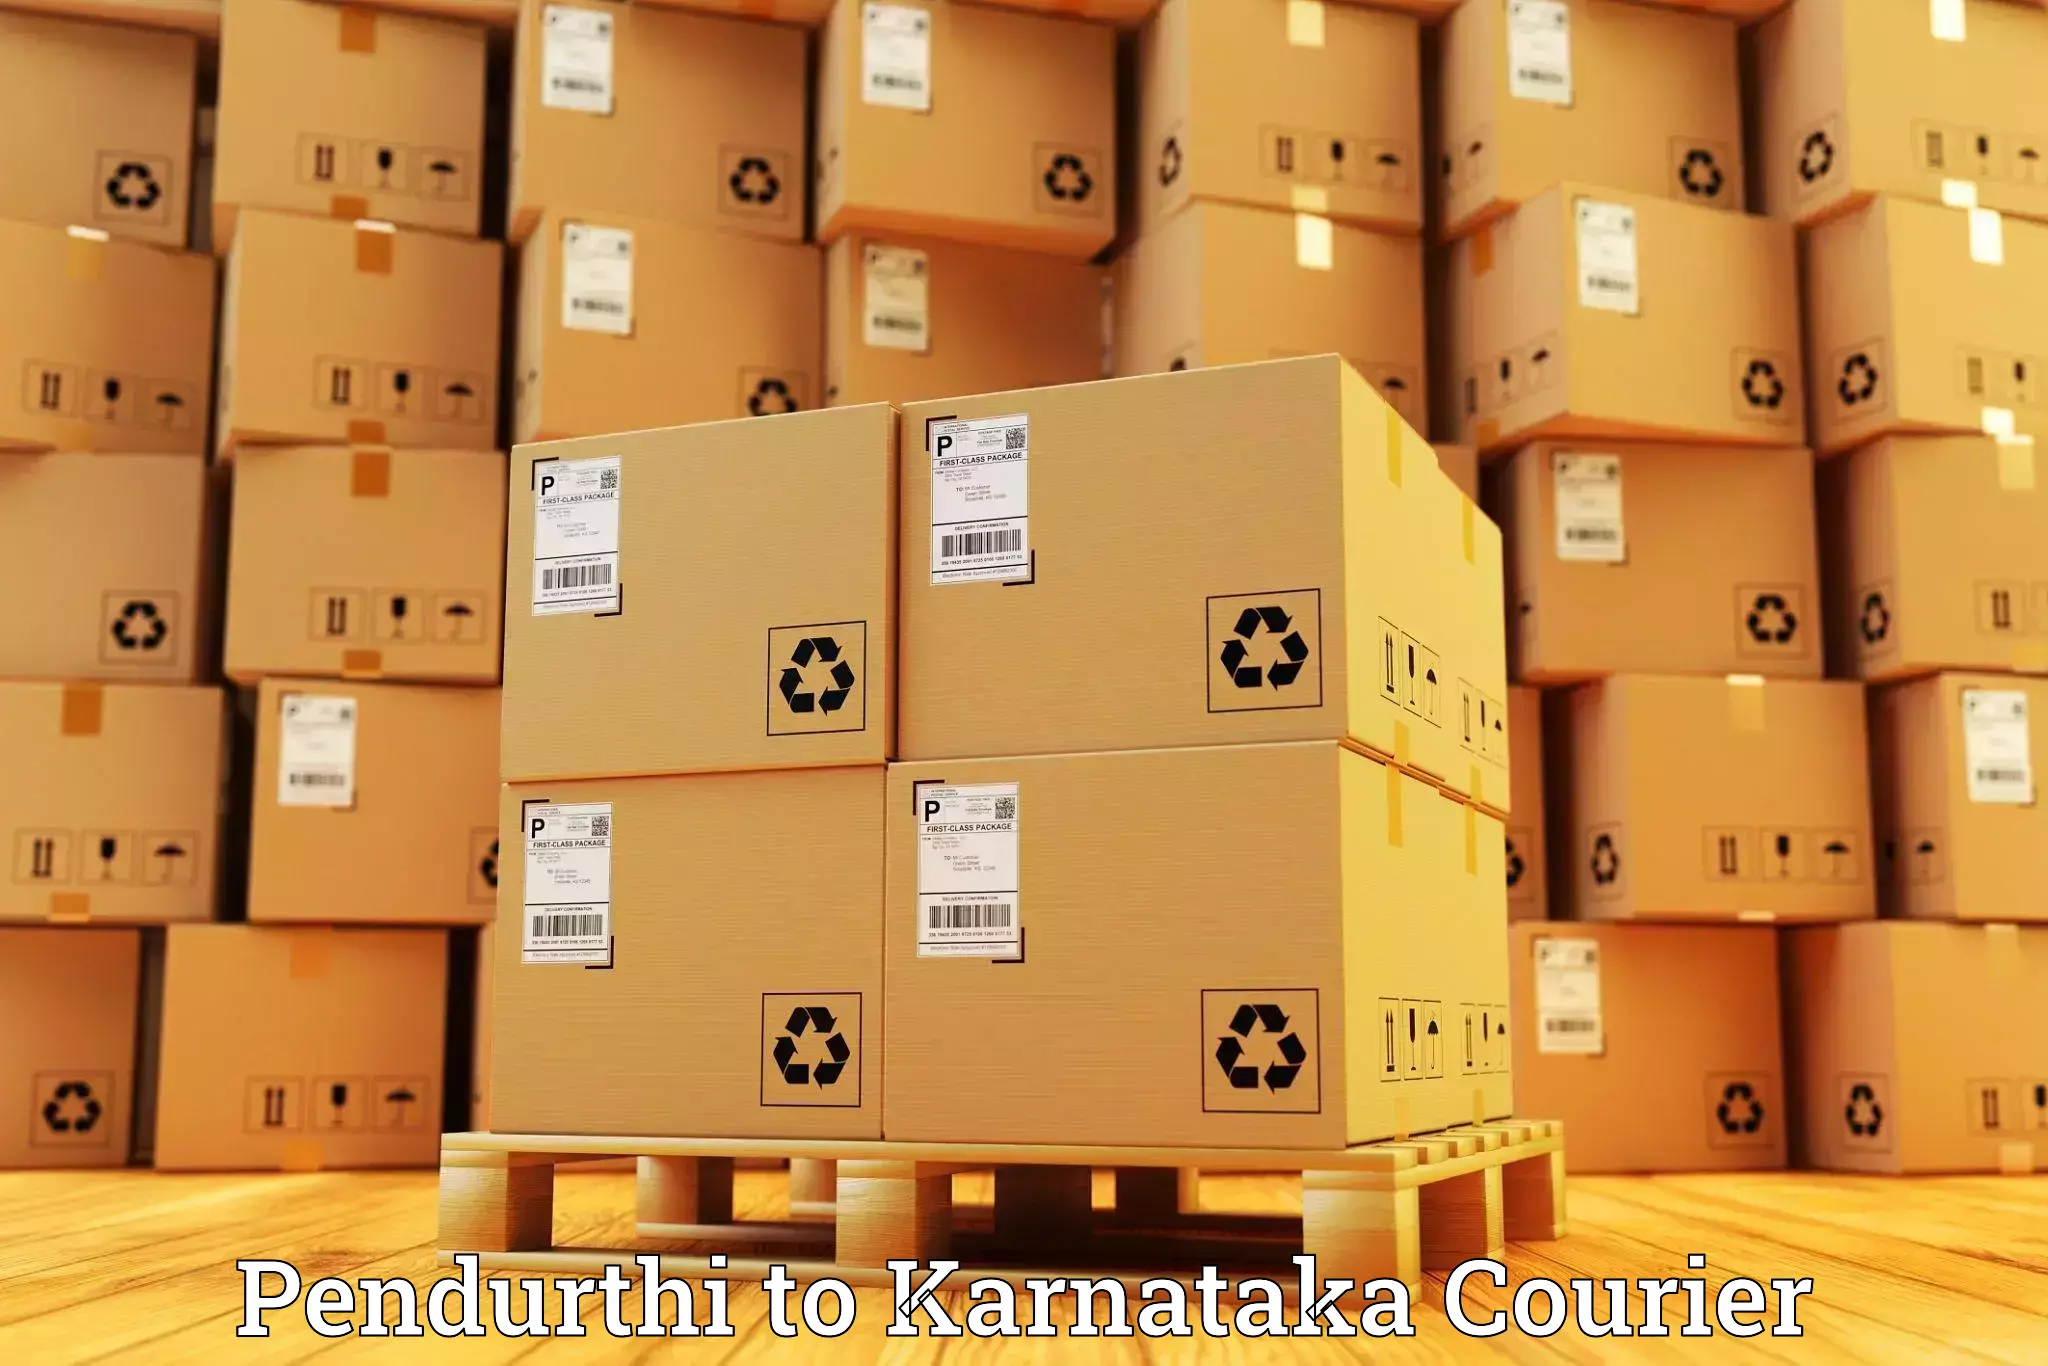 Global logistics network Pendurthi to Bethamangala